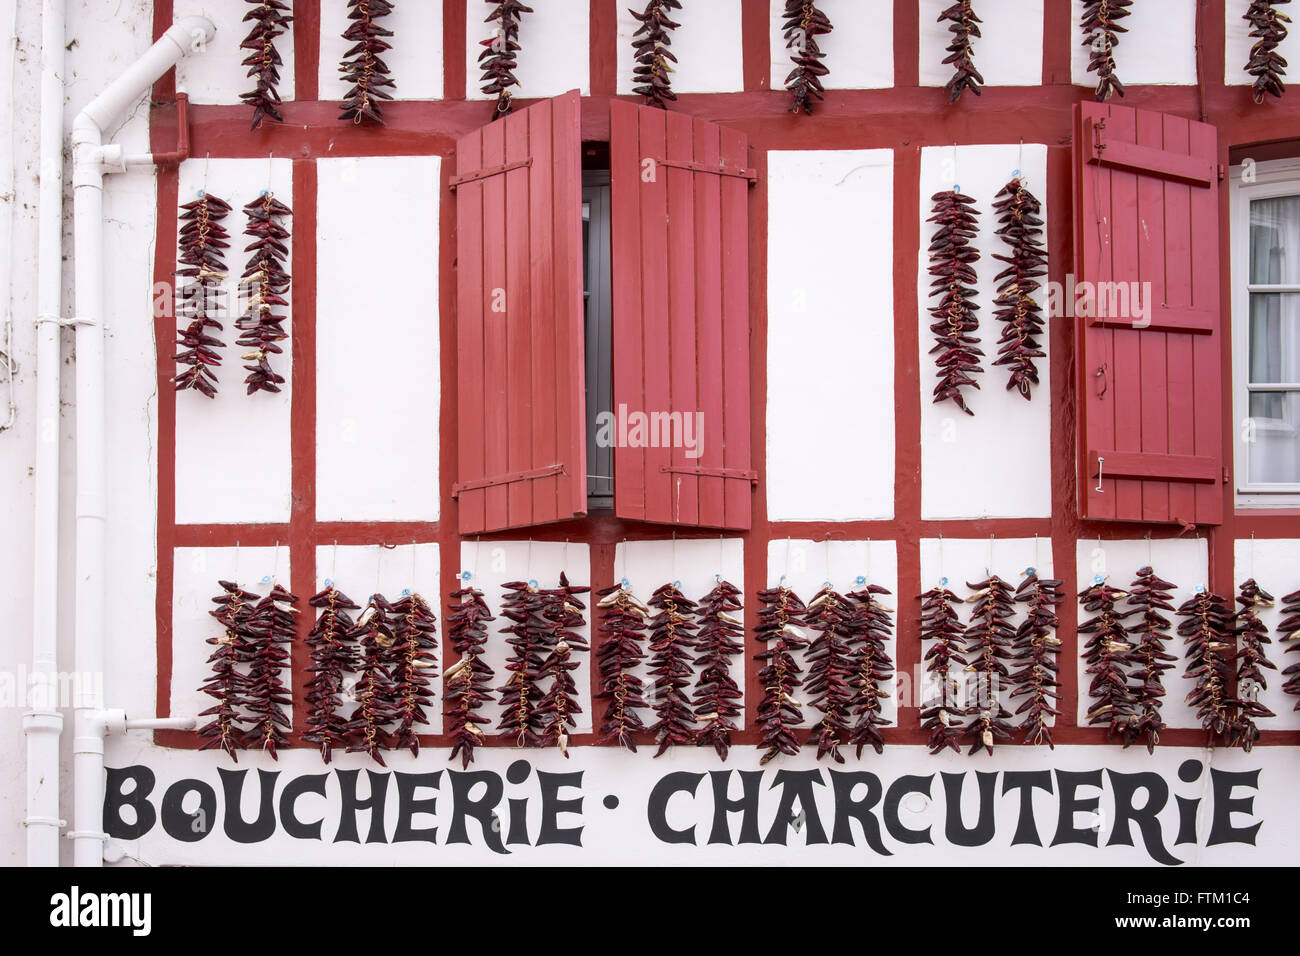 Espelette Pfeffer Saiten hängen an der Fassade eine Metzgerei in Espelette, Frankreich Stockfoto